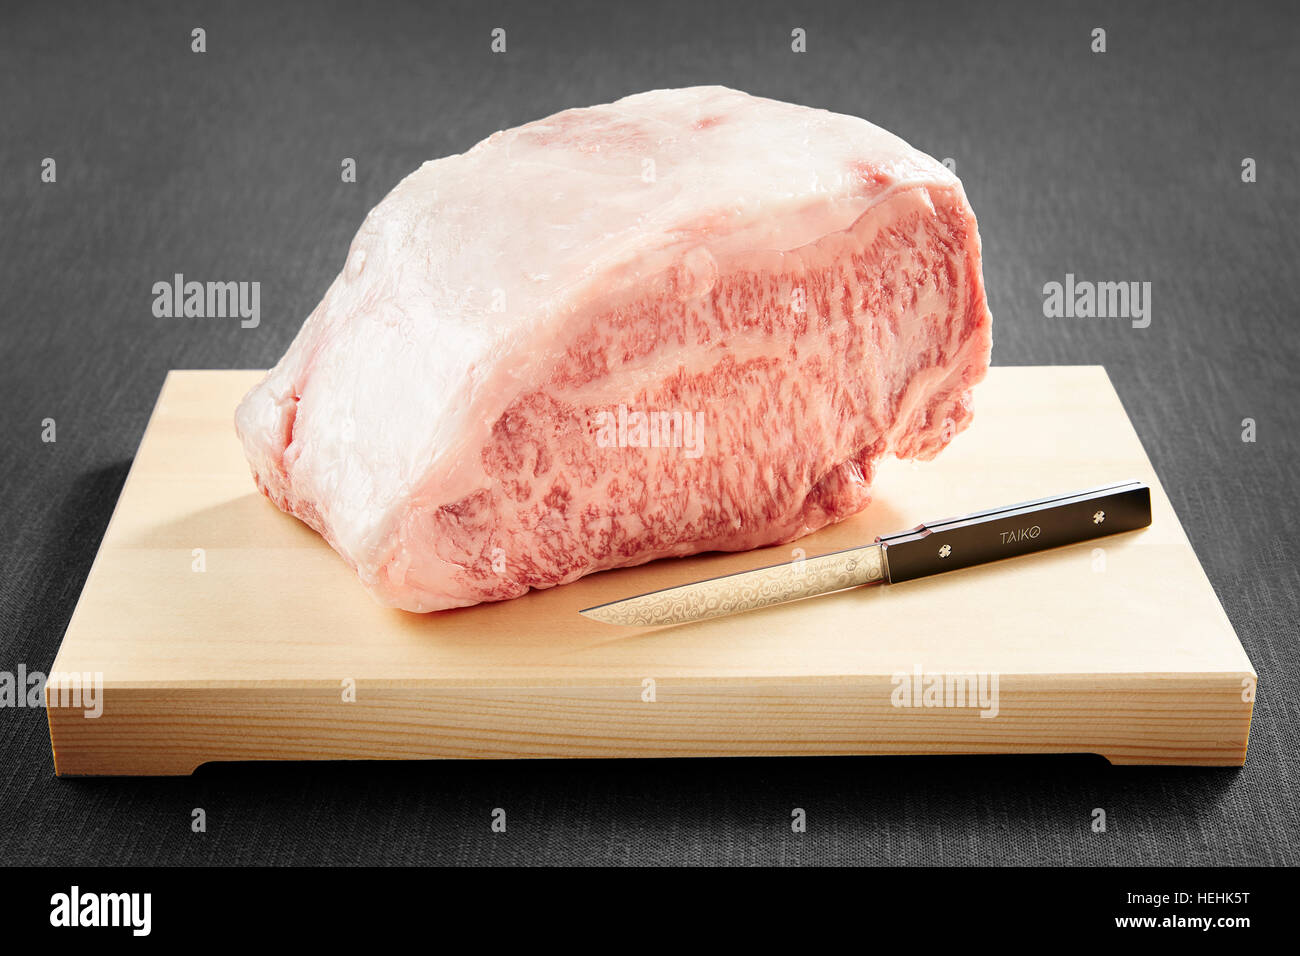 Carne di manzo Wagyu cruda delicatezza giapponese costosa carne marmorizzata grassa Foto Stock